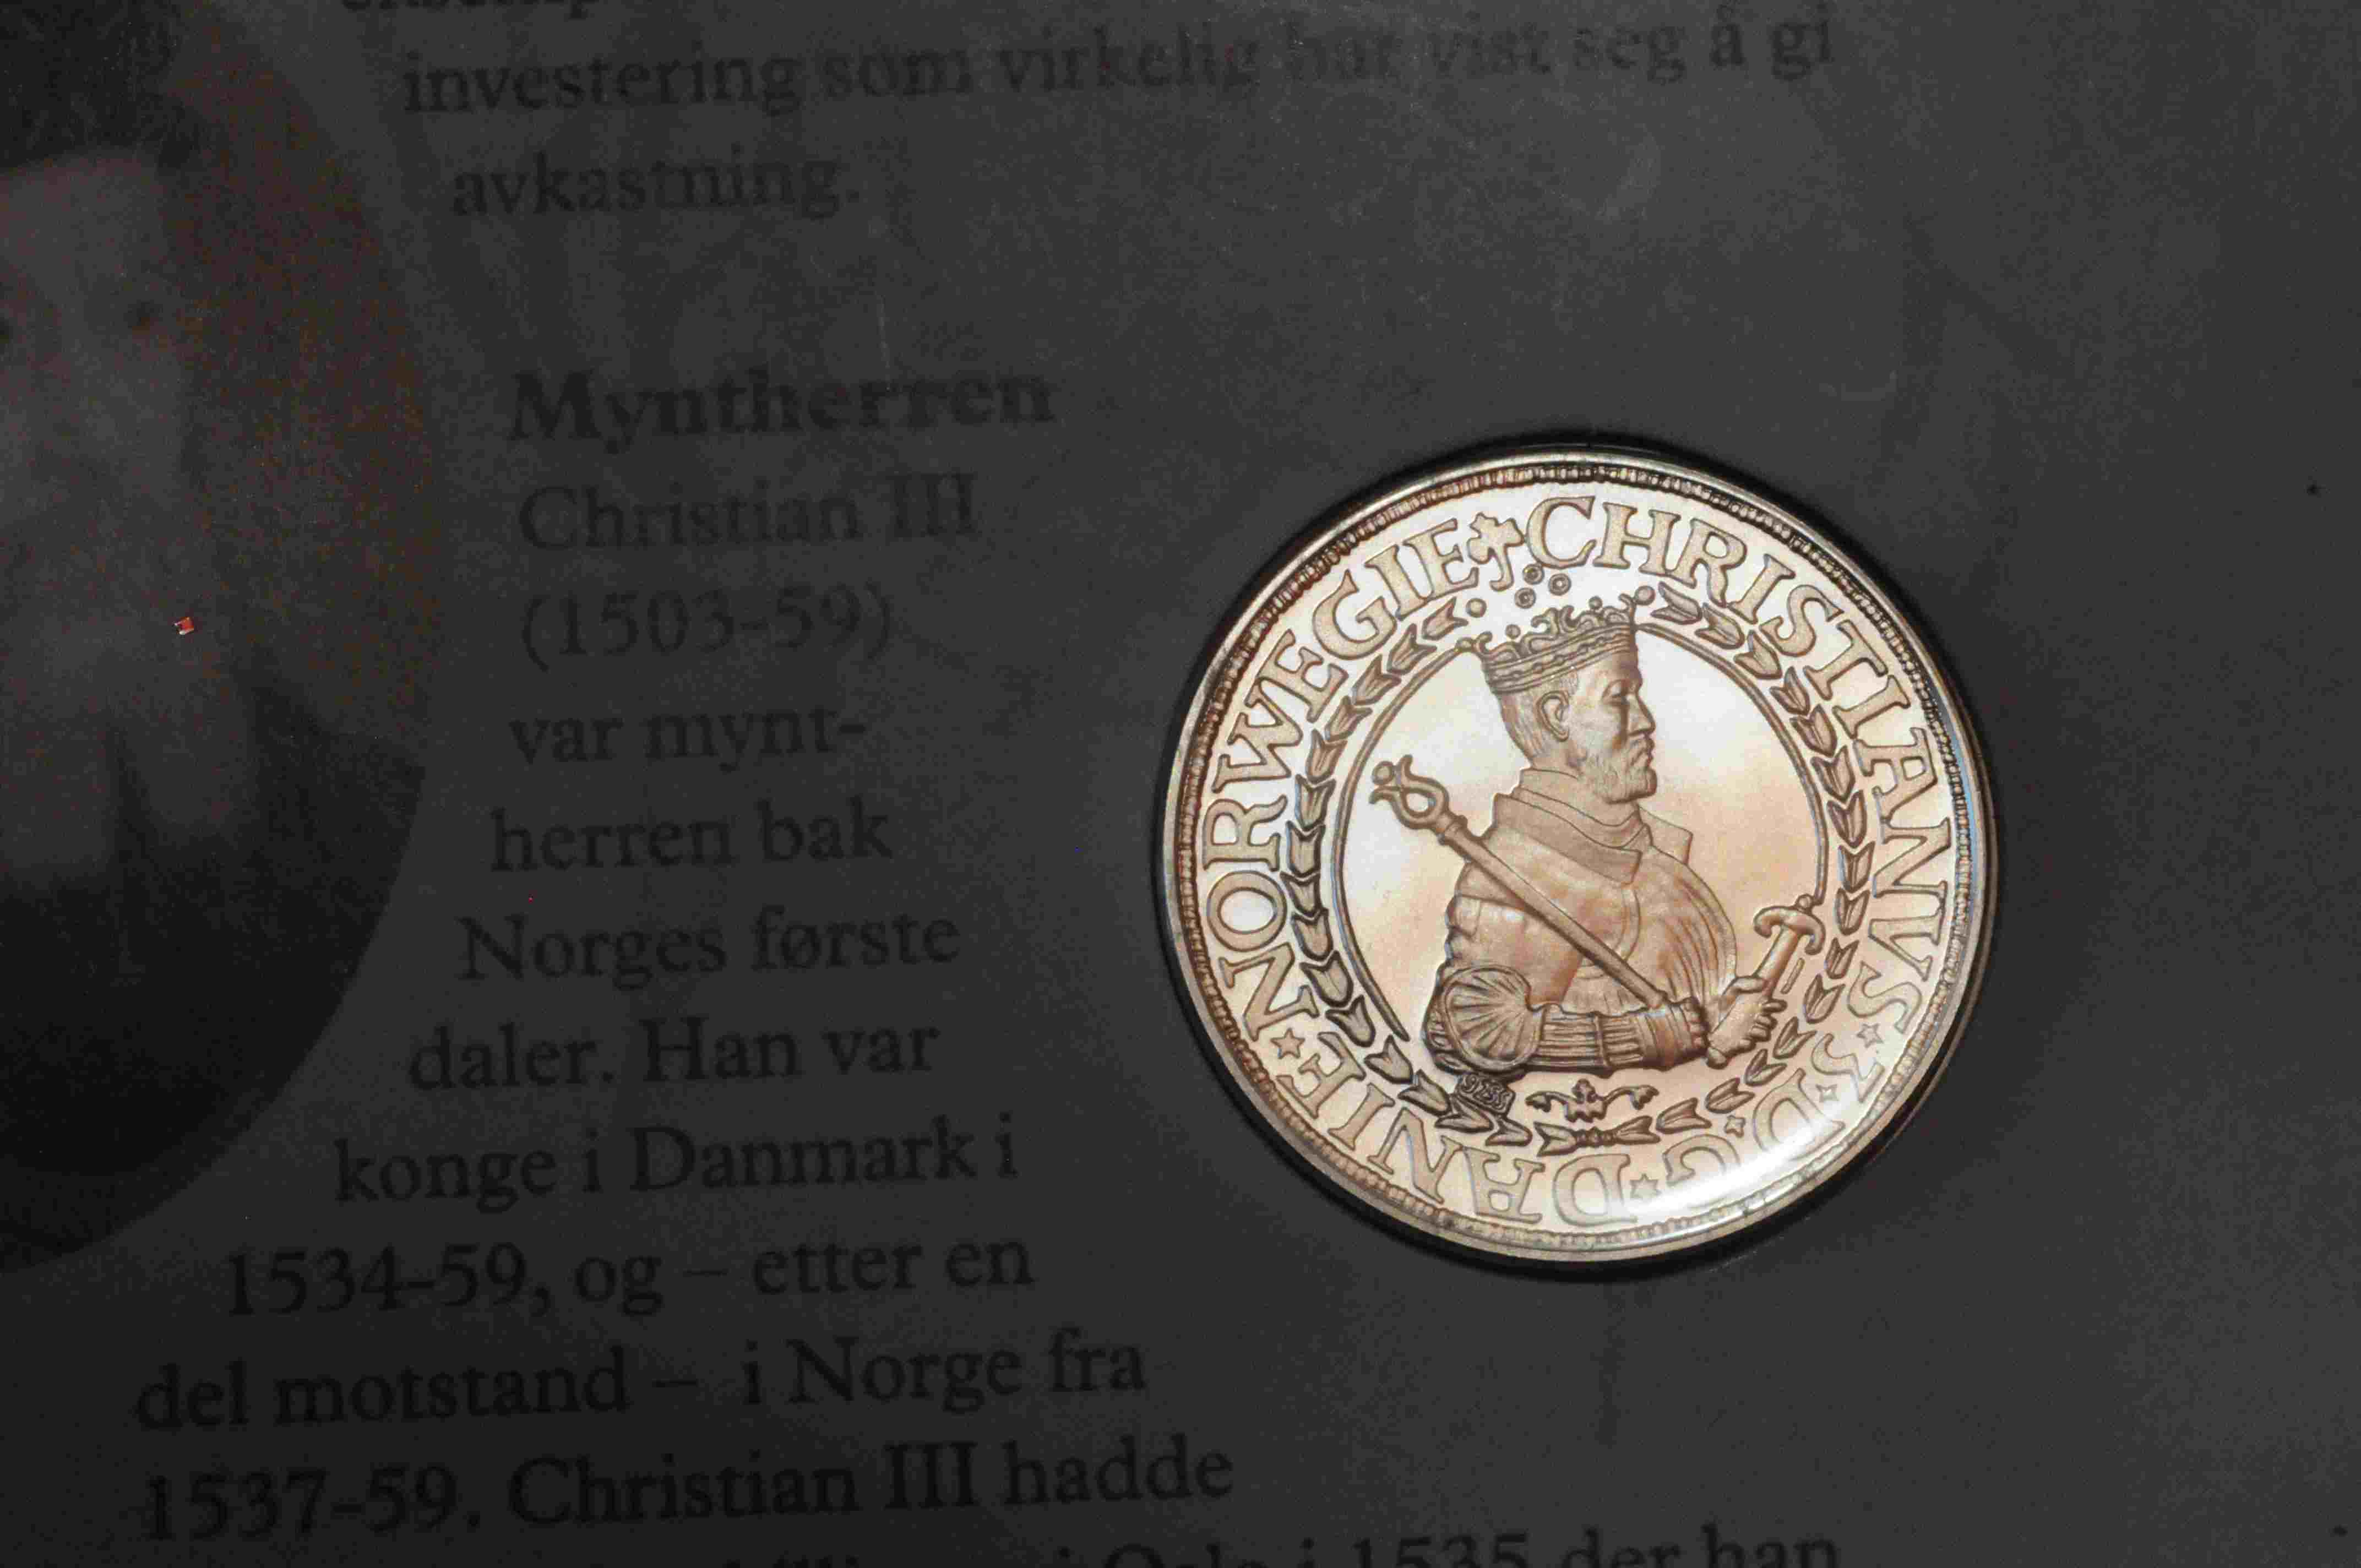 Gimsøydaleren kopi Norges første daler 0659 av 2000 kv0 st Skien 1999